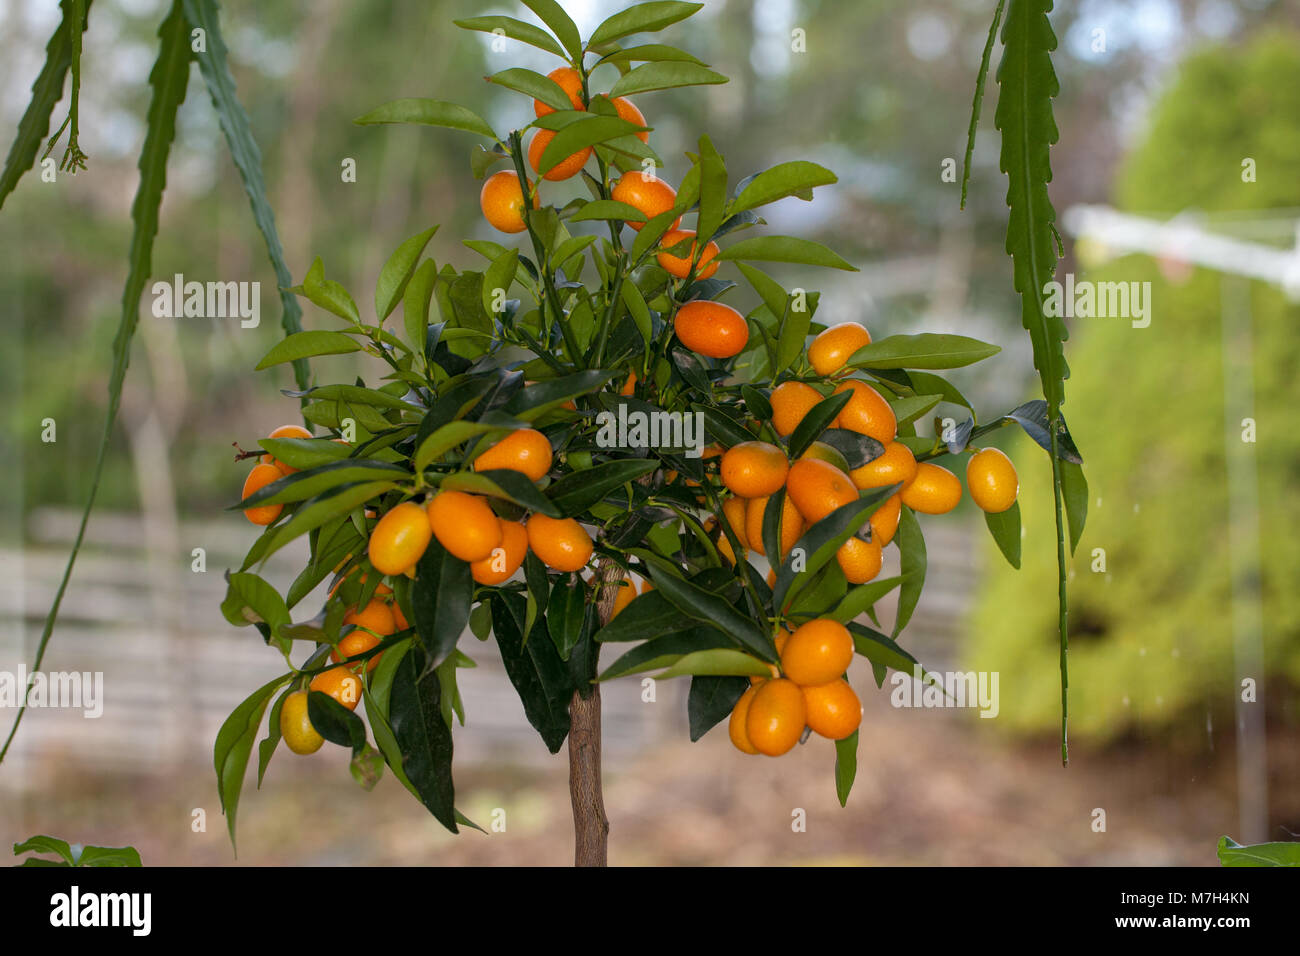 Oval cumquat, Oval kumquat (Fortunella margarita) Stock Photo